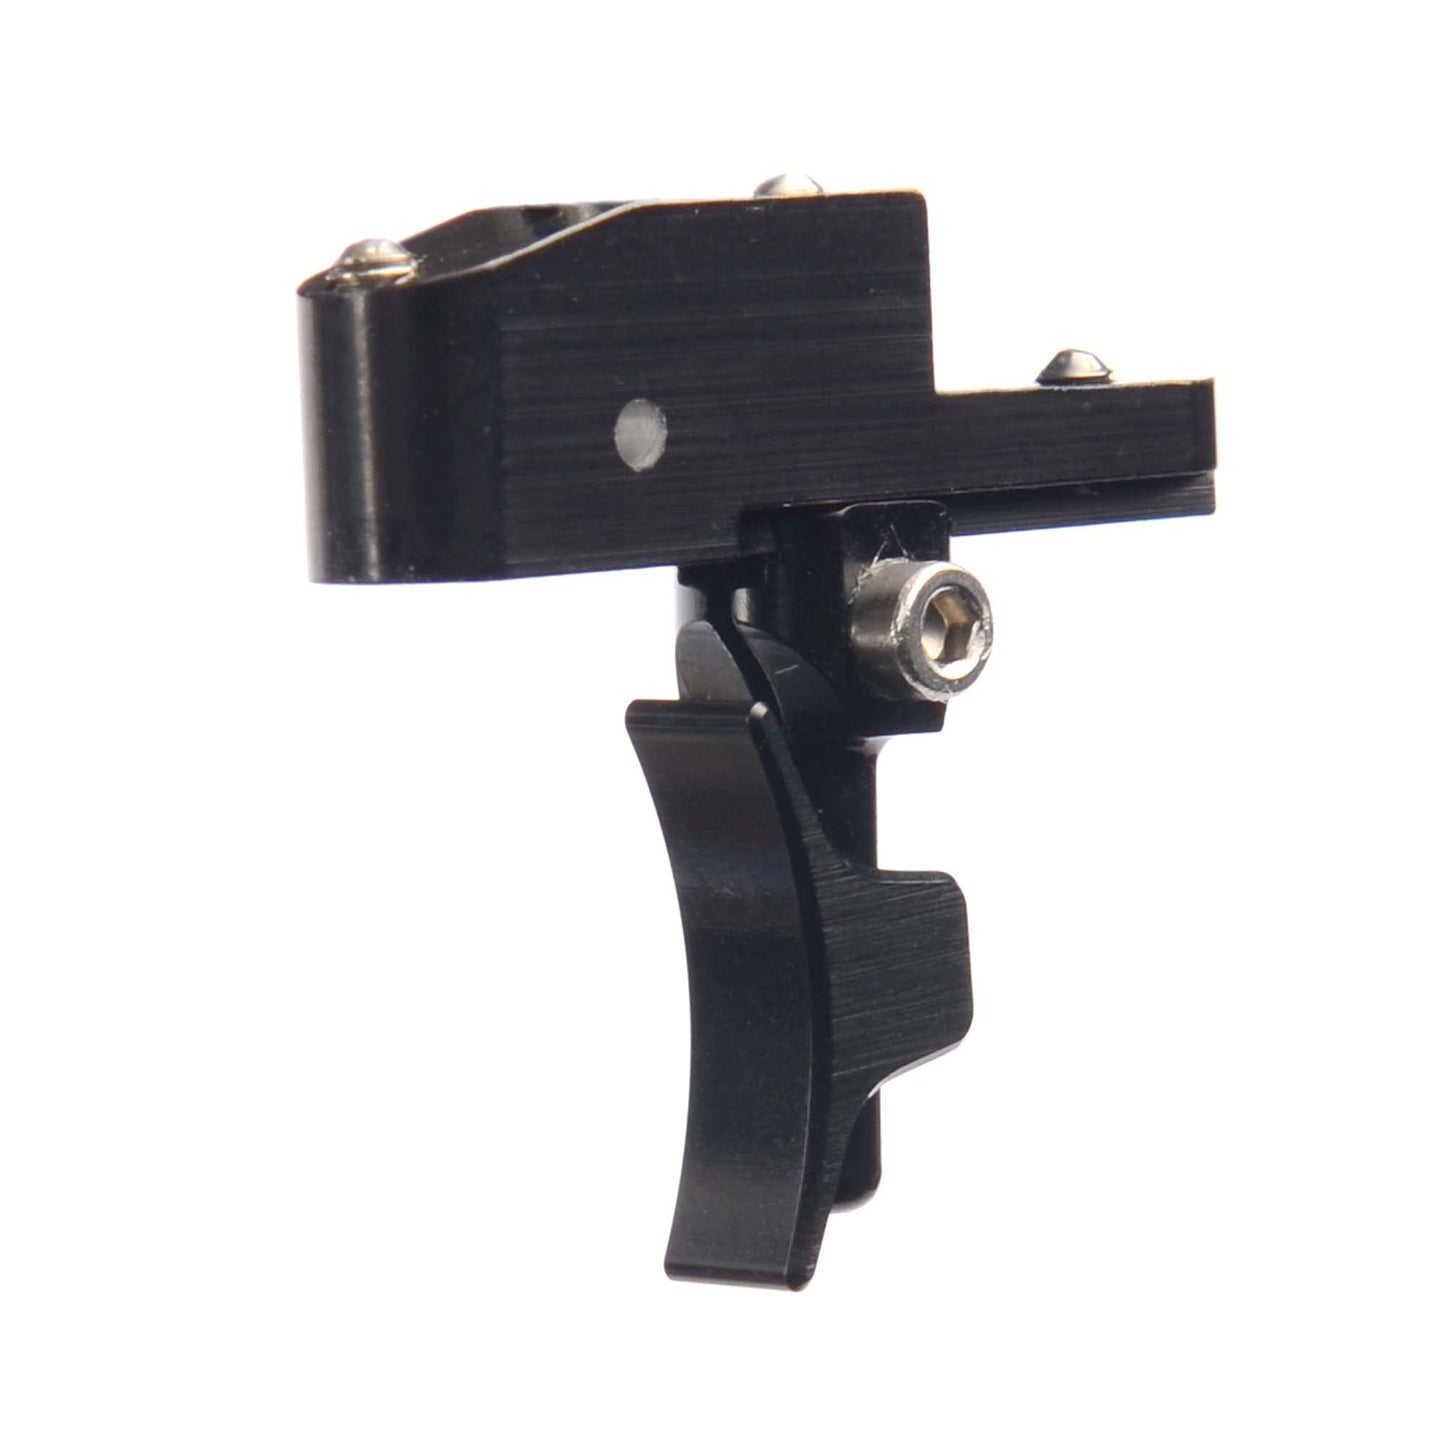 Daystate MK 3/4 Adjustable trigger